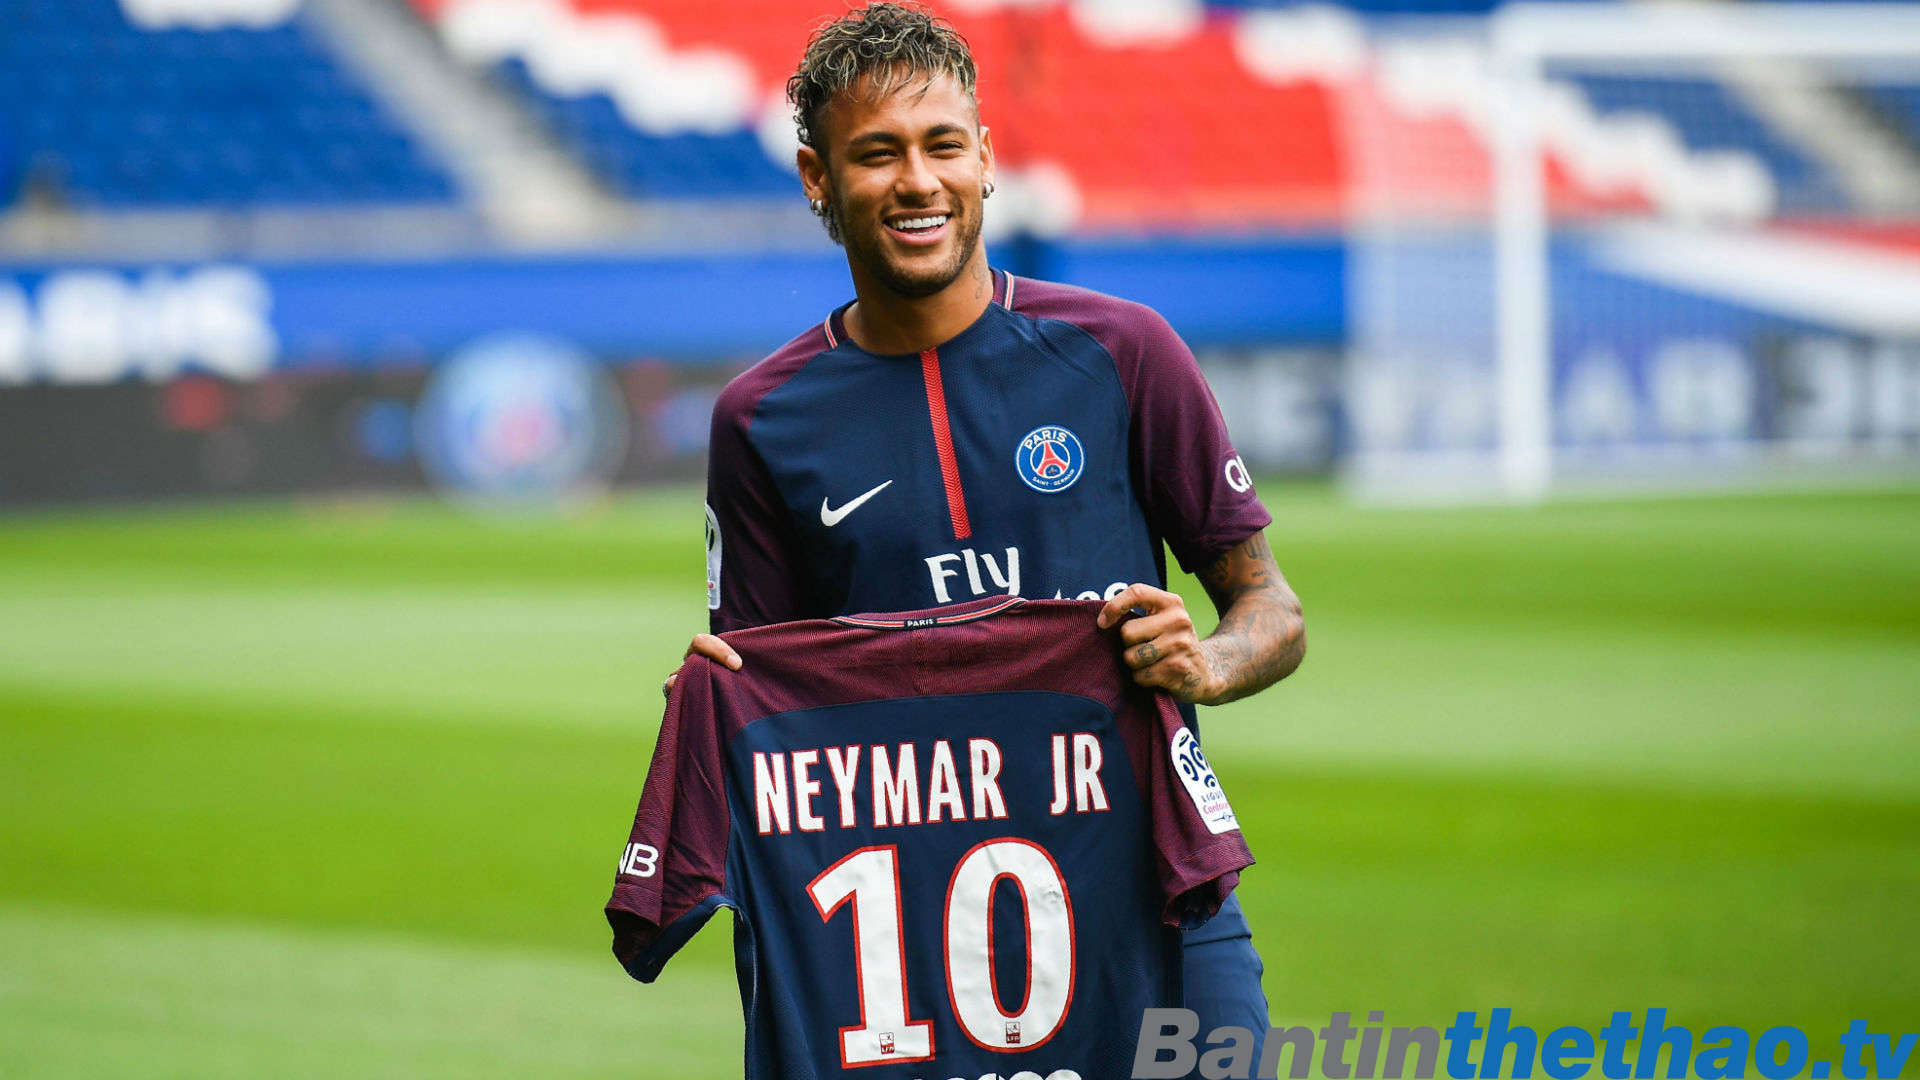 PSG phá vỡ hợp đồng của Neymar bằng 222 triệu Euro